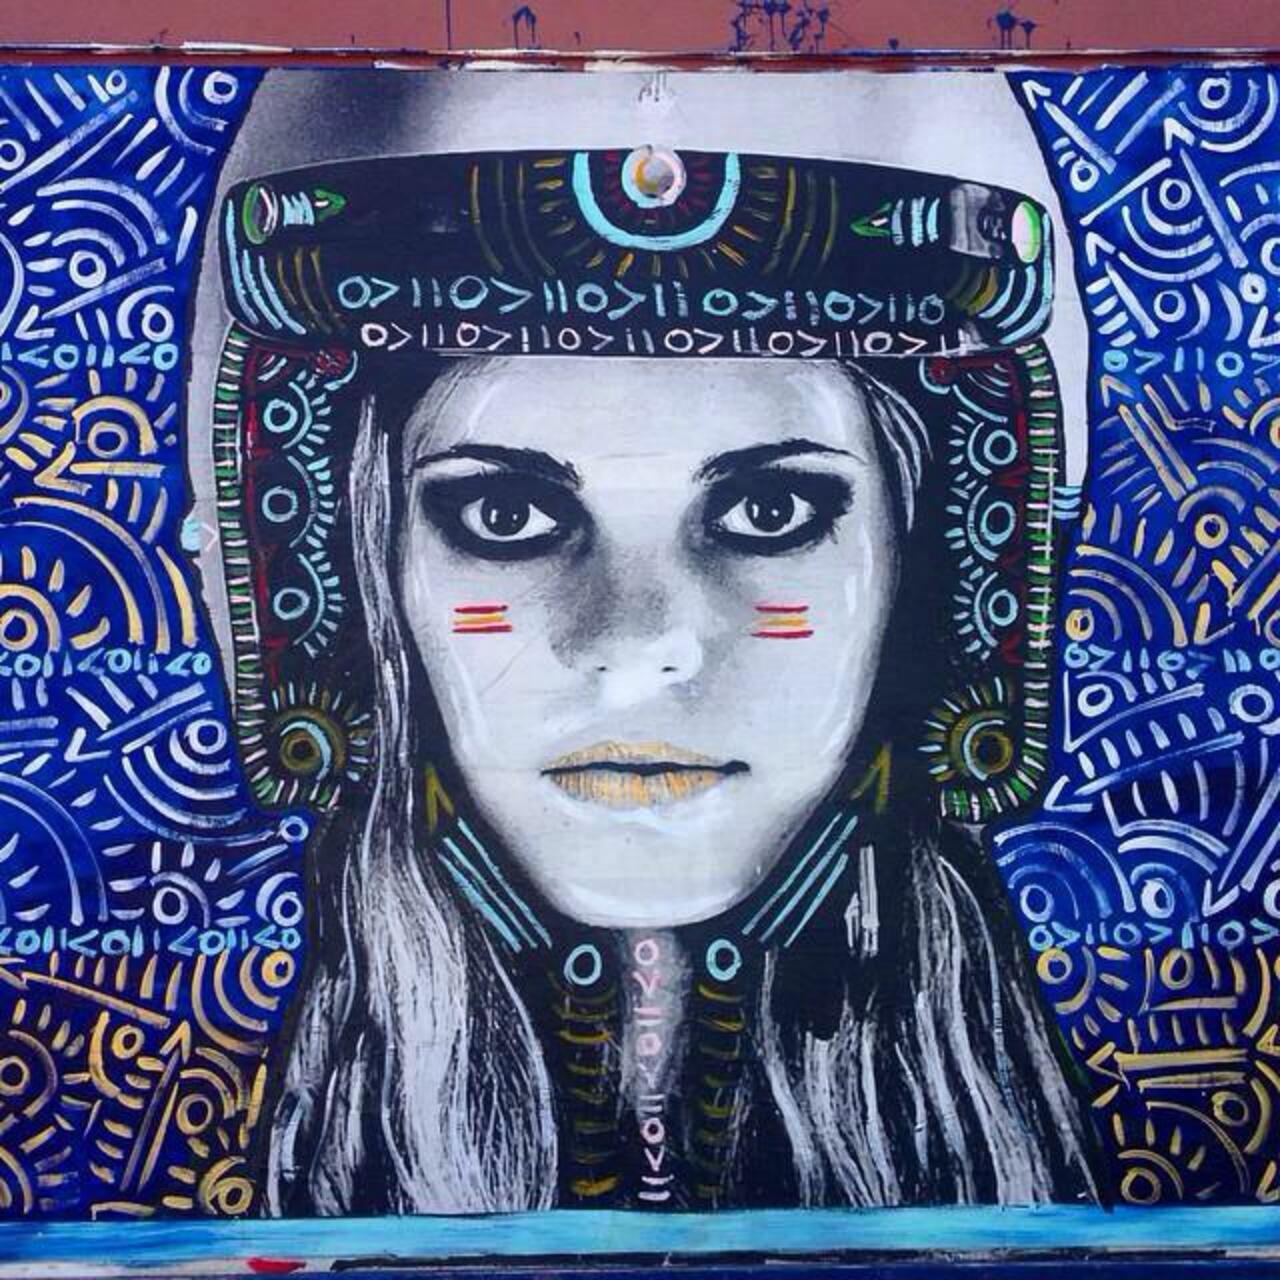 Street Art by Kelcey Fisher in LA
Photo by djcatnap

#art #arte #graffiti #streetart http://t.co/1gRe0l3XSl